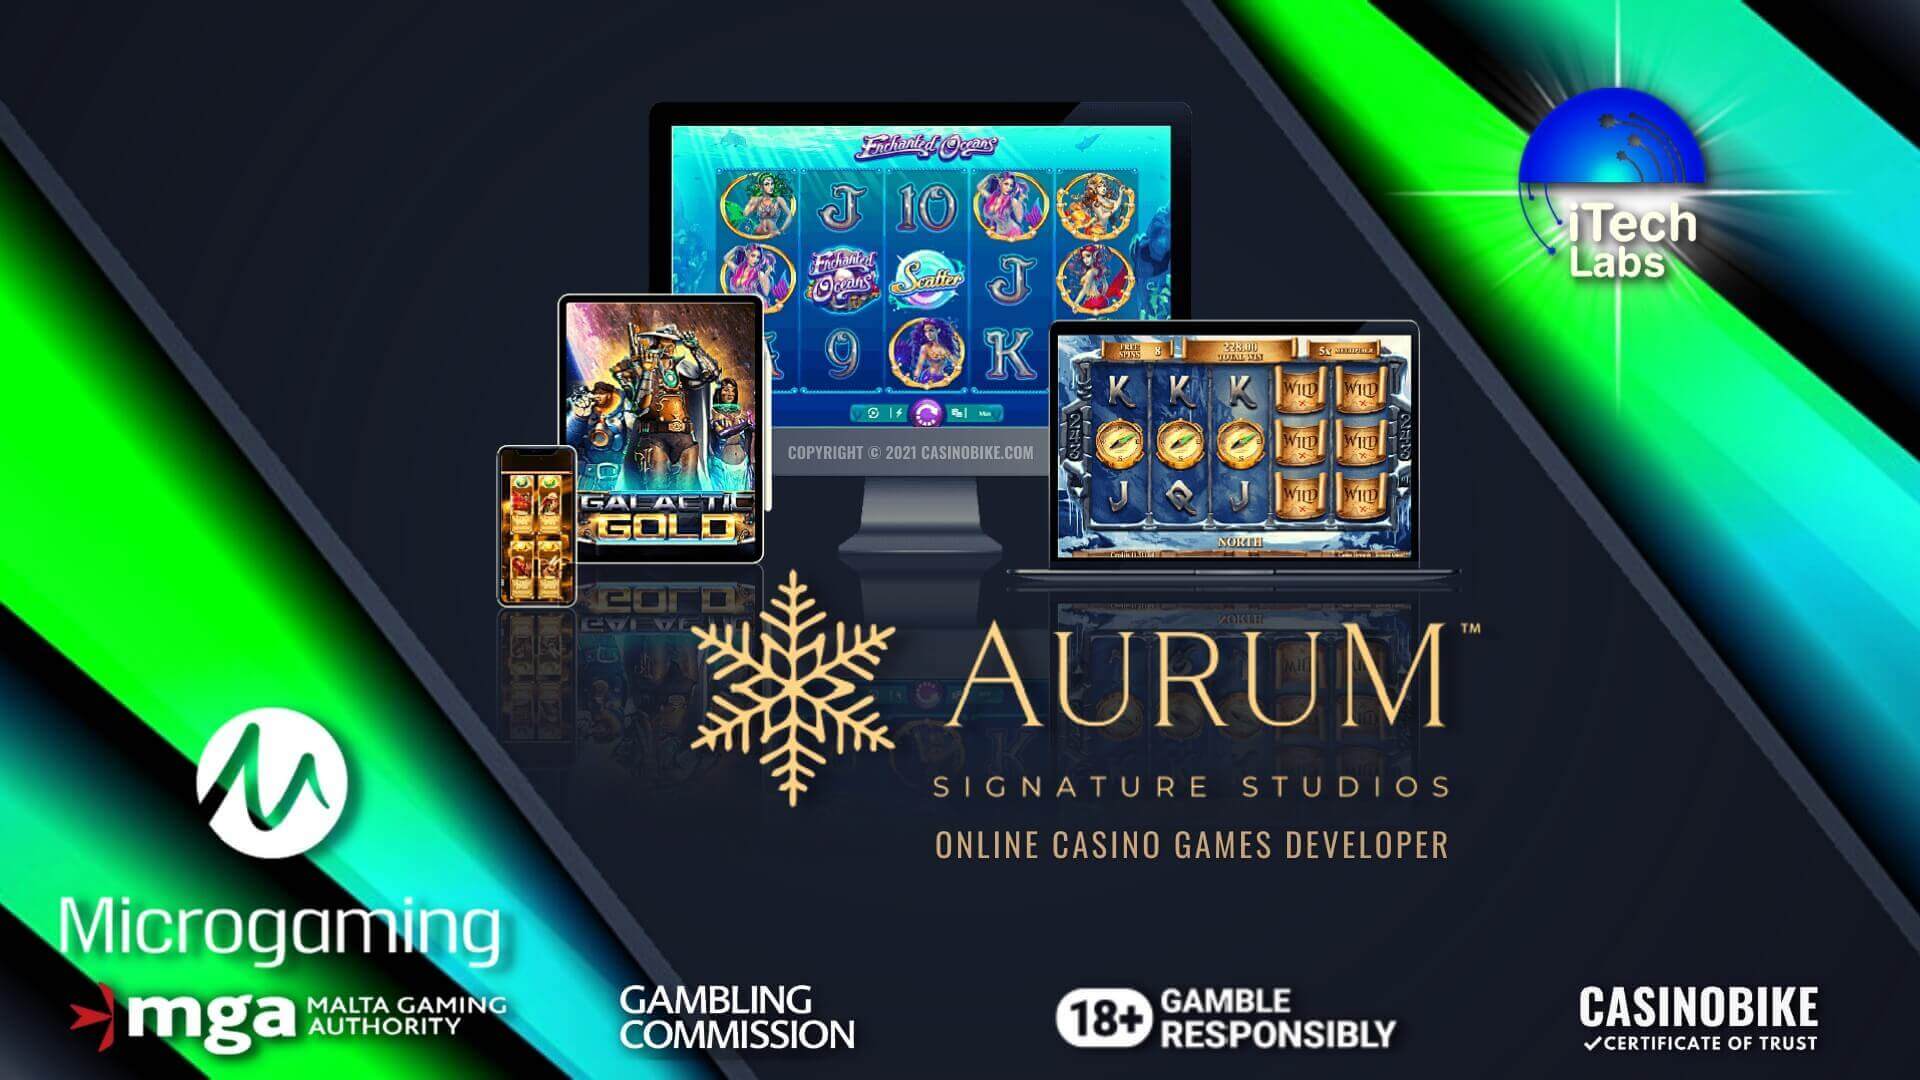 Aurum Signature Studios Online Casino Games Developer